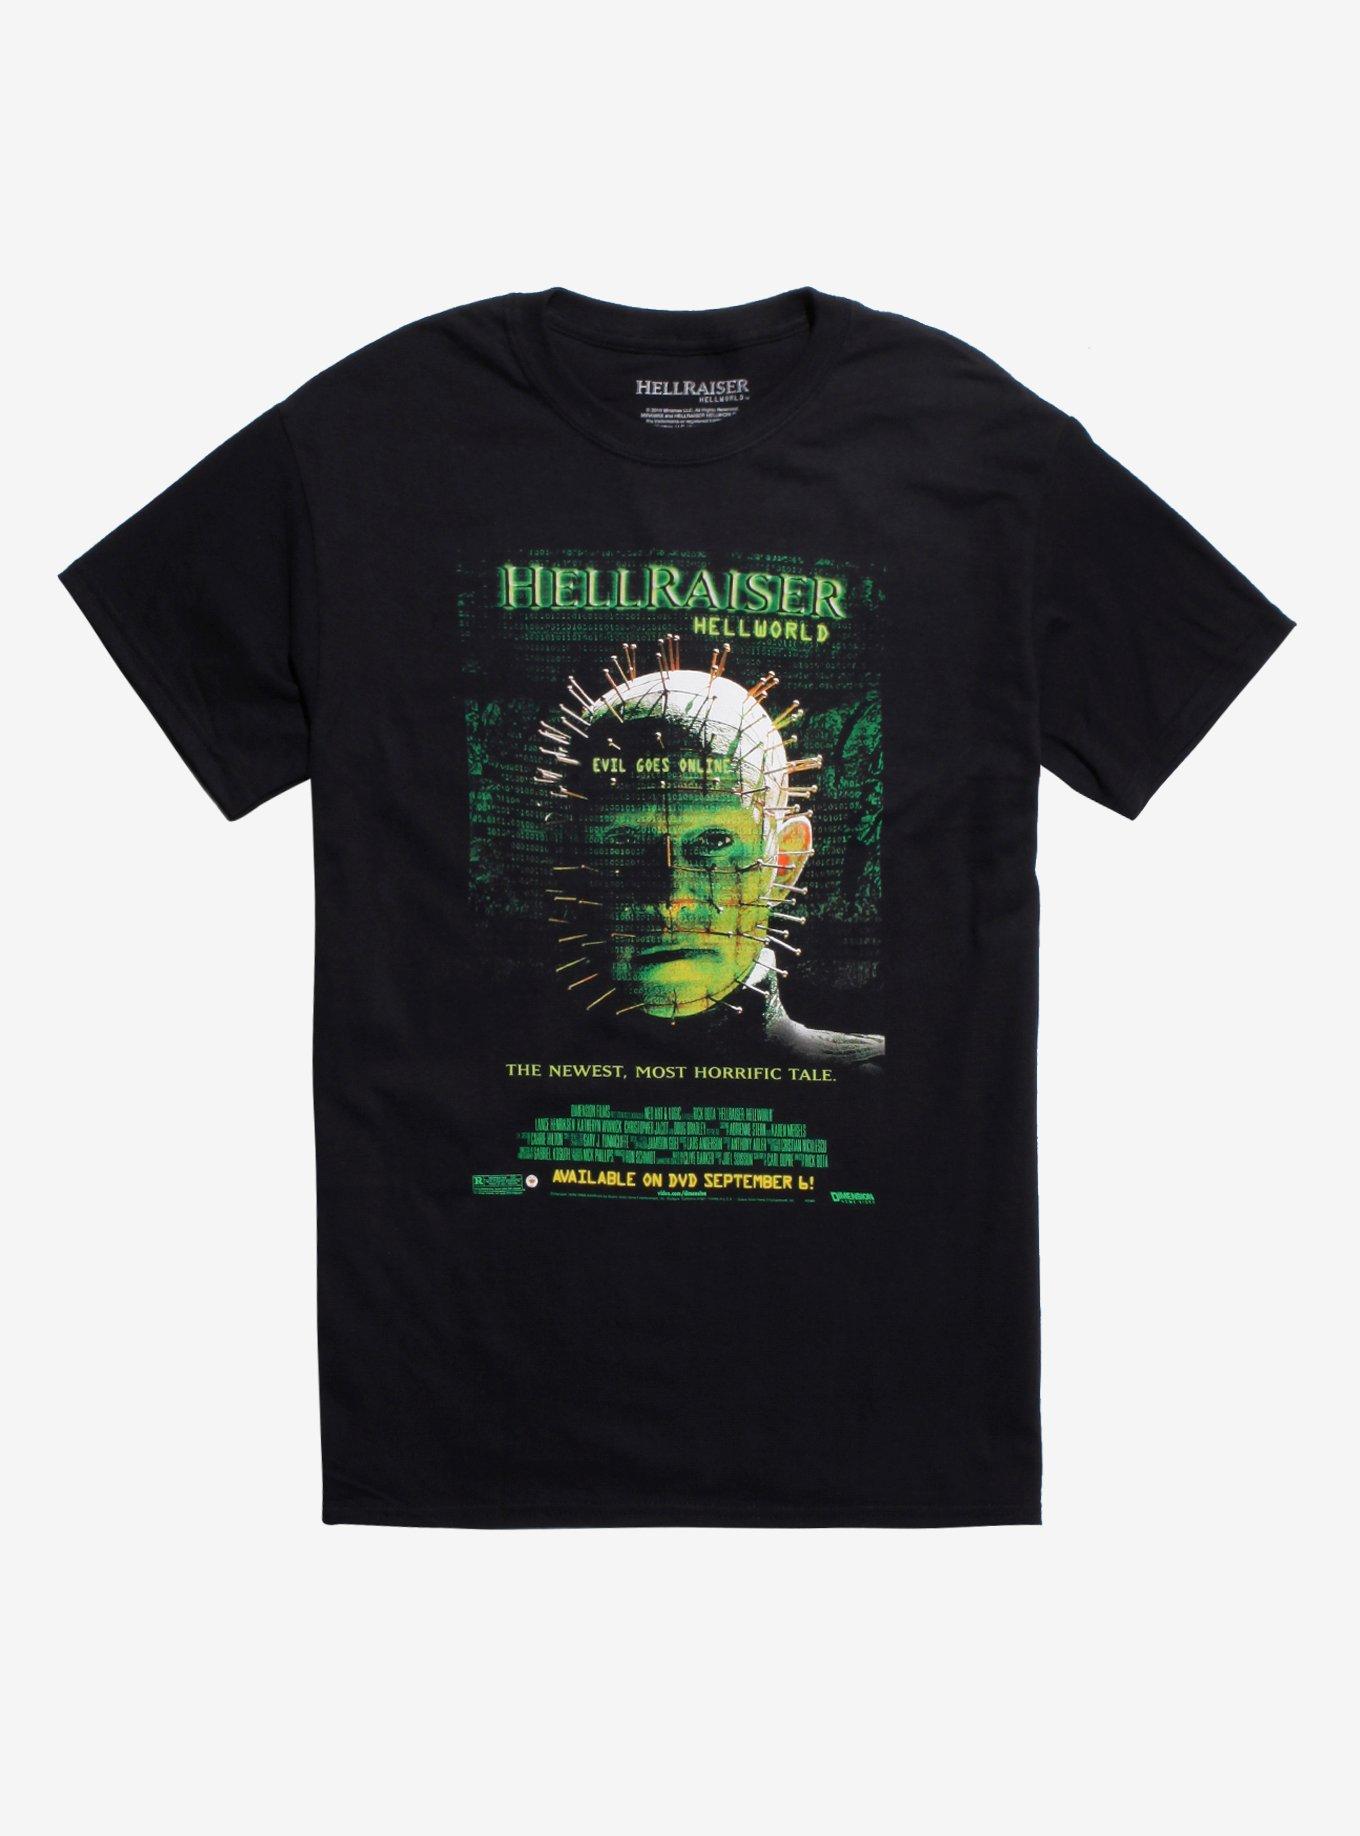 hellraiser hellworld chelsea